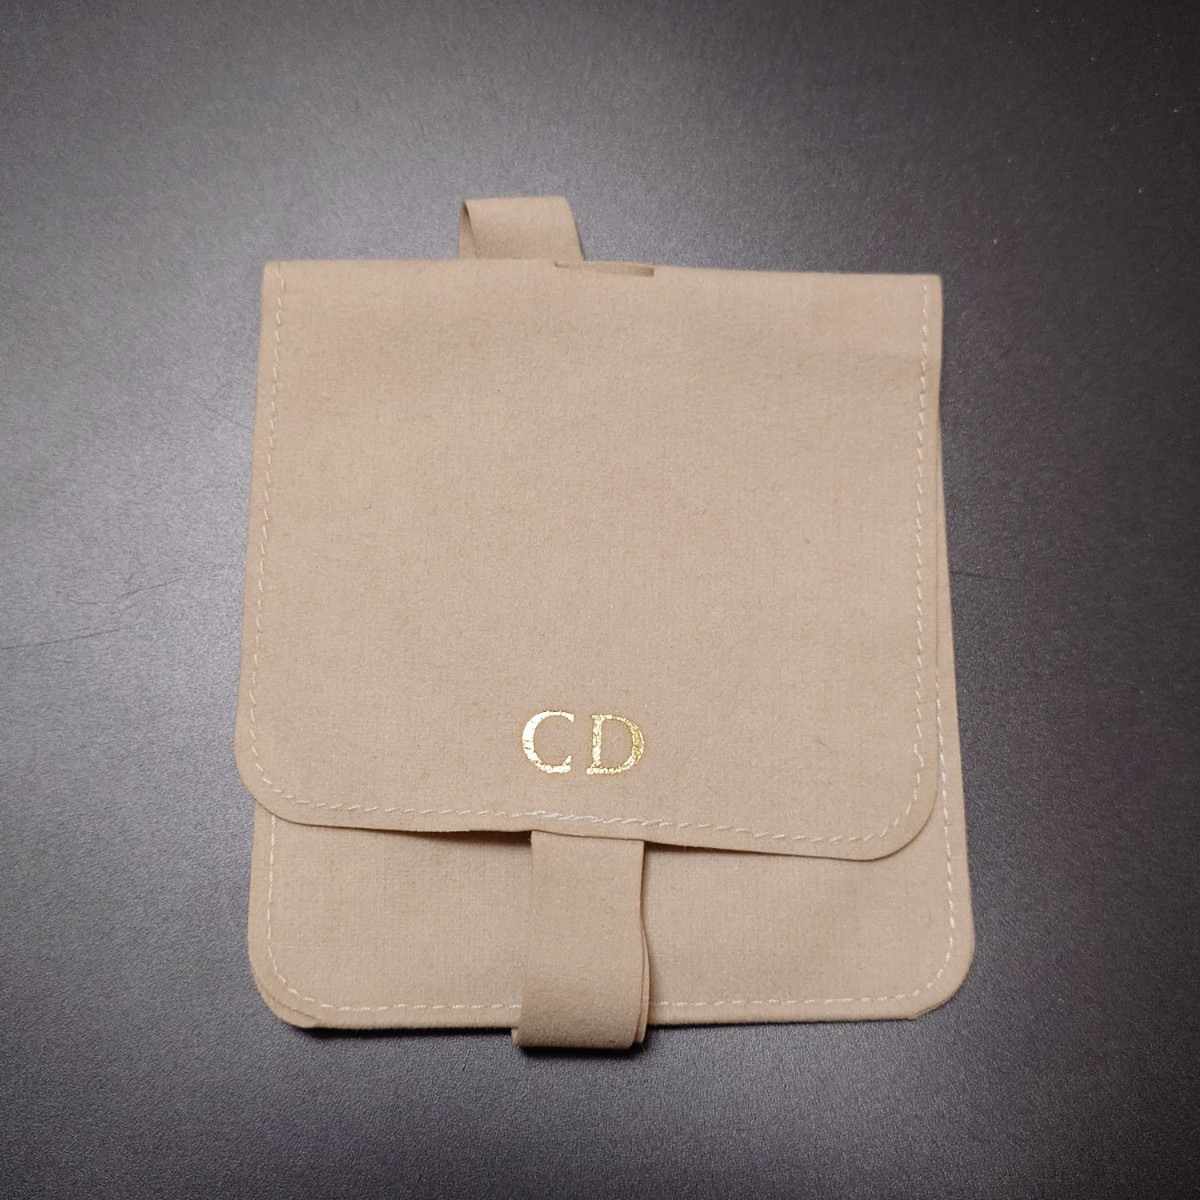 【新品未使用品】 Christian Dior ディオール ネックレス CD ロゴ サークル ツイスト ゴールド アクセサリー 希少 刻印 43cm 保存袋付き_画像6